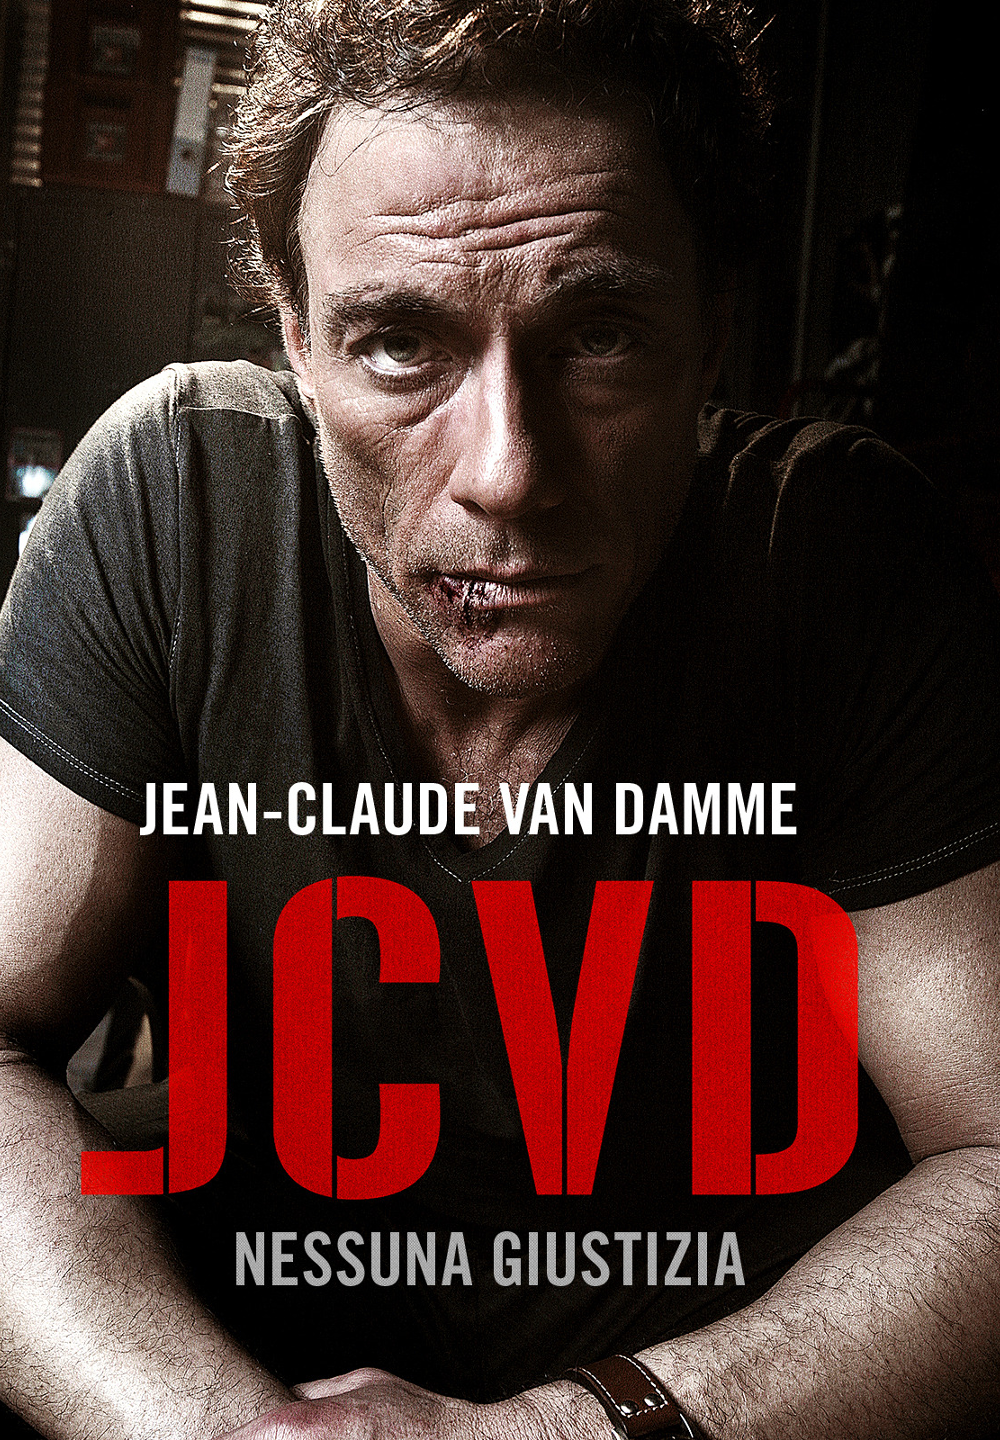 JCVD – Nessuna Giustizia [HD] (2008)